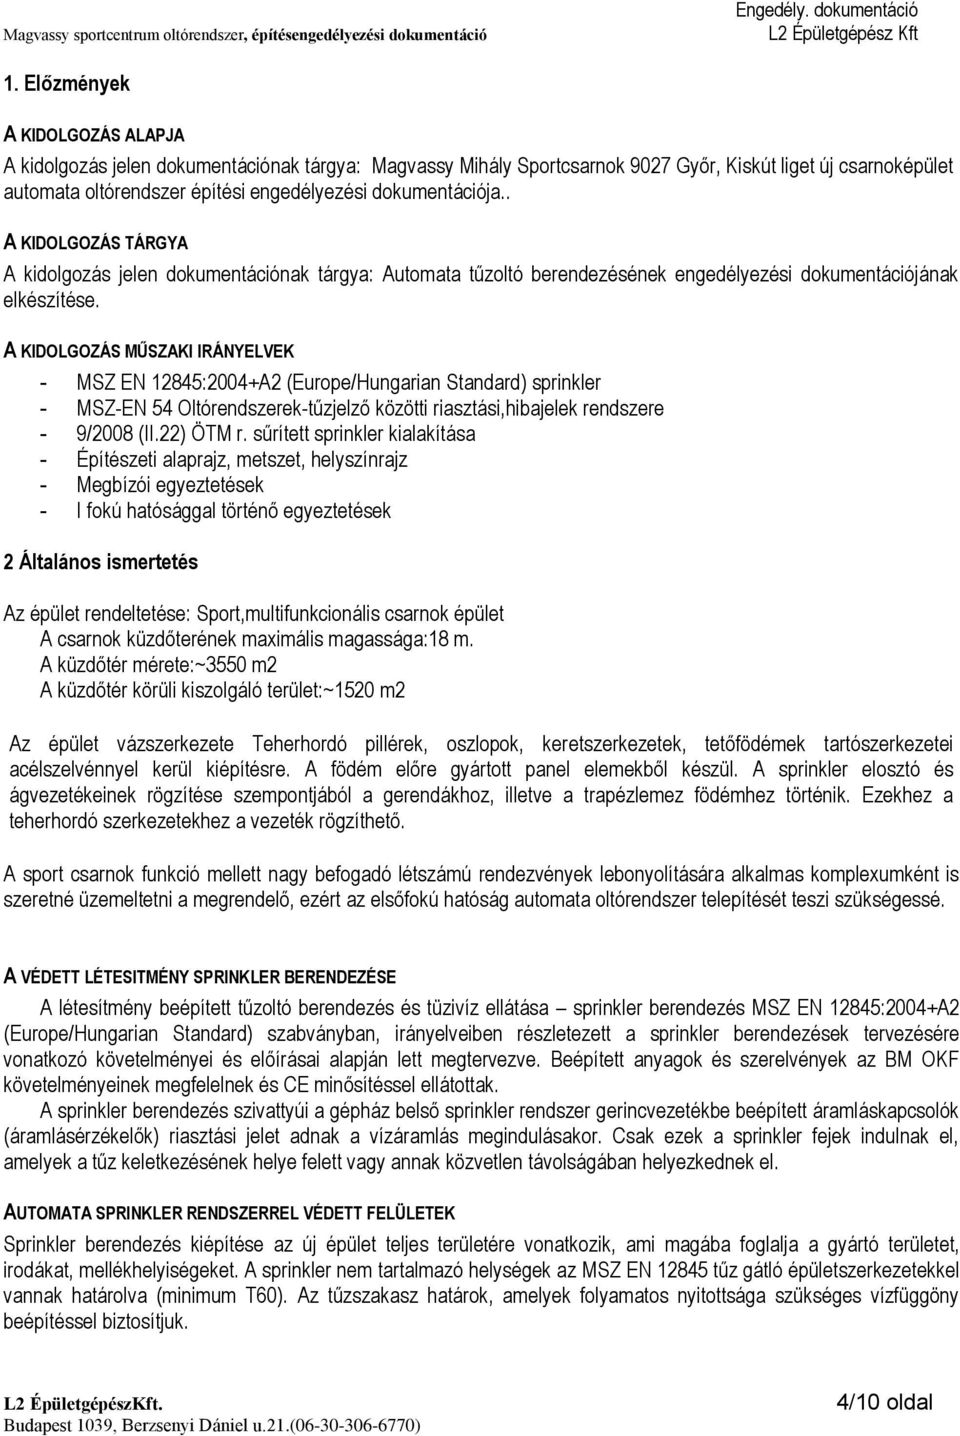 A KIDOLGOZÁS MŰSZAKI IRÁNYELVEK - MSZ EN 12845:2004+A2 (Europe/Hungarian Standard) sprinkler - MSZ-EN 54 Oltórendszerek-tűzjelző közötti riasztási,hibajelek rendszere - 9/2008 (II.22) ÖTM r.